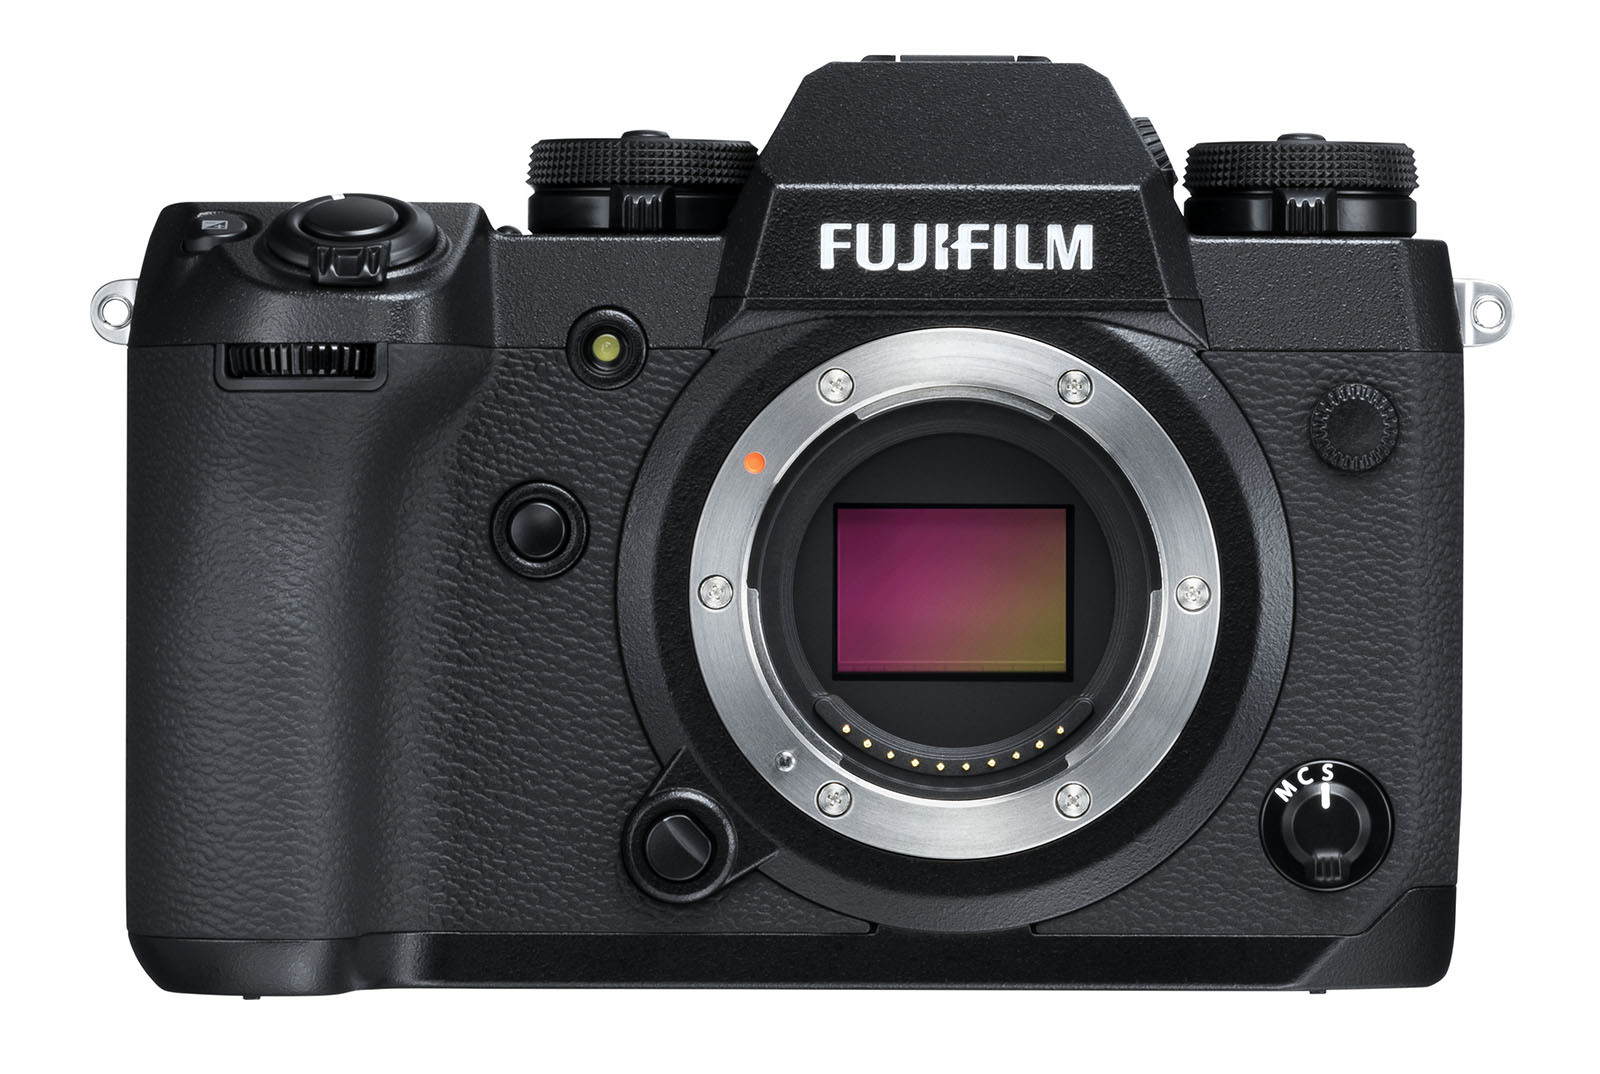 Kamera Nircermin Fujifilm XH-1 Kini Di Pasaran Malaysia – Hadir Bermula Pada Harga RM7988